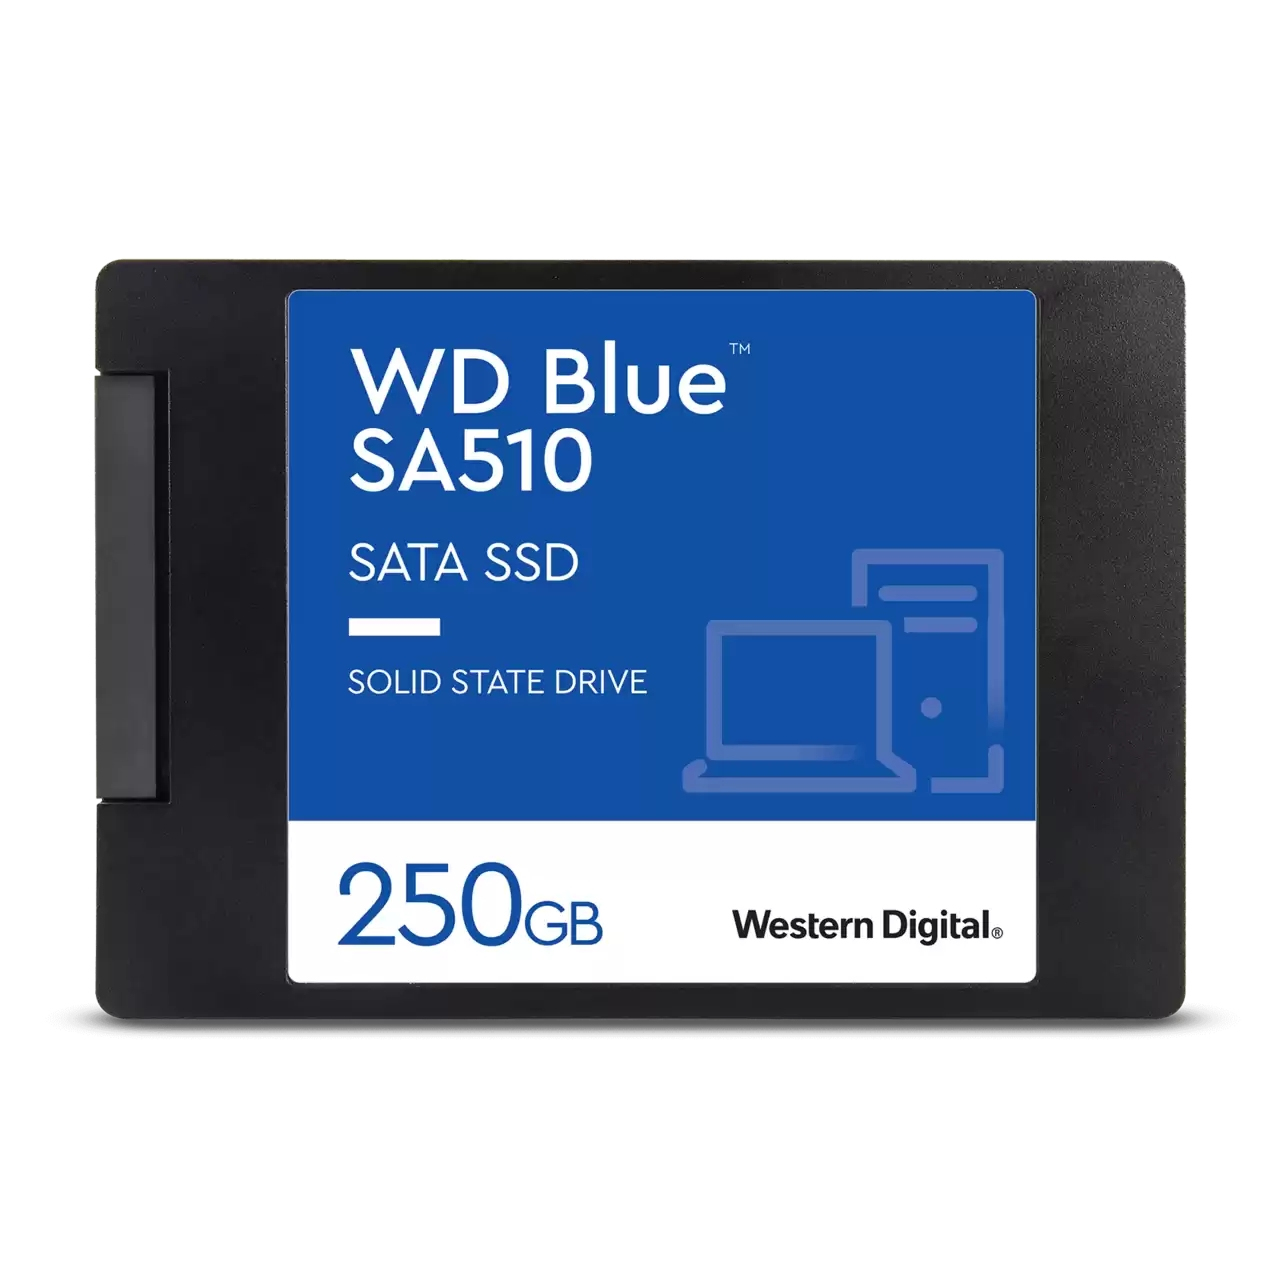 SSD 2,5 250GB SA510 SATA3 BLUE WD NO KIT INSTAL. NEW